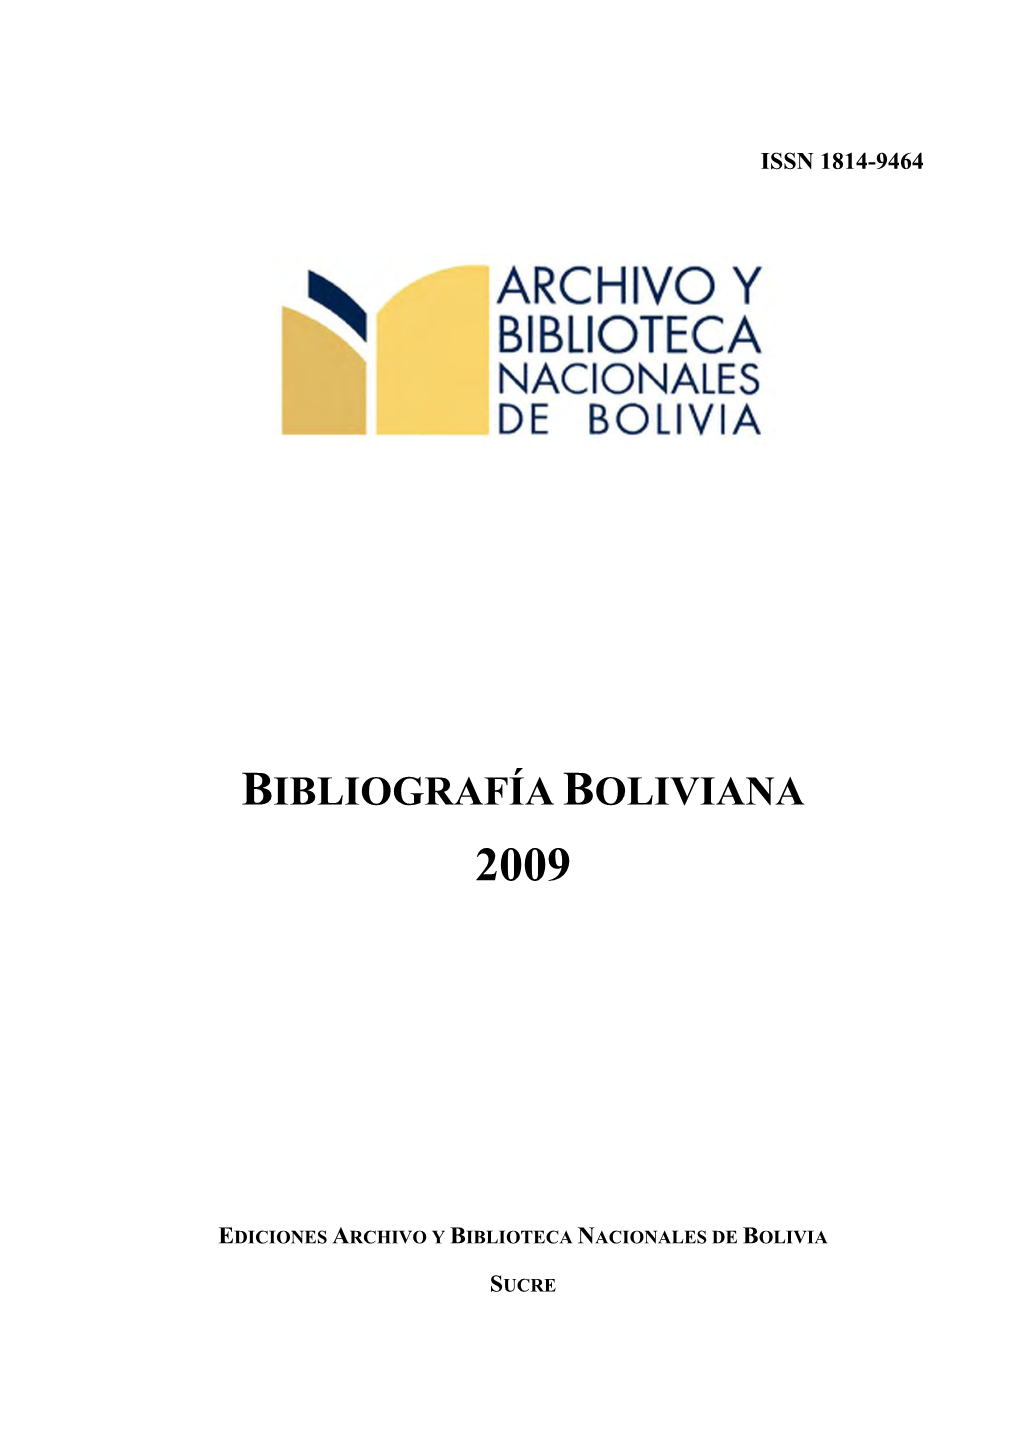 Bibliografía Boliviana 2009